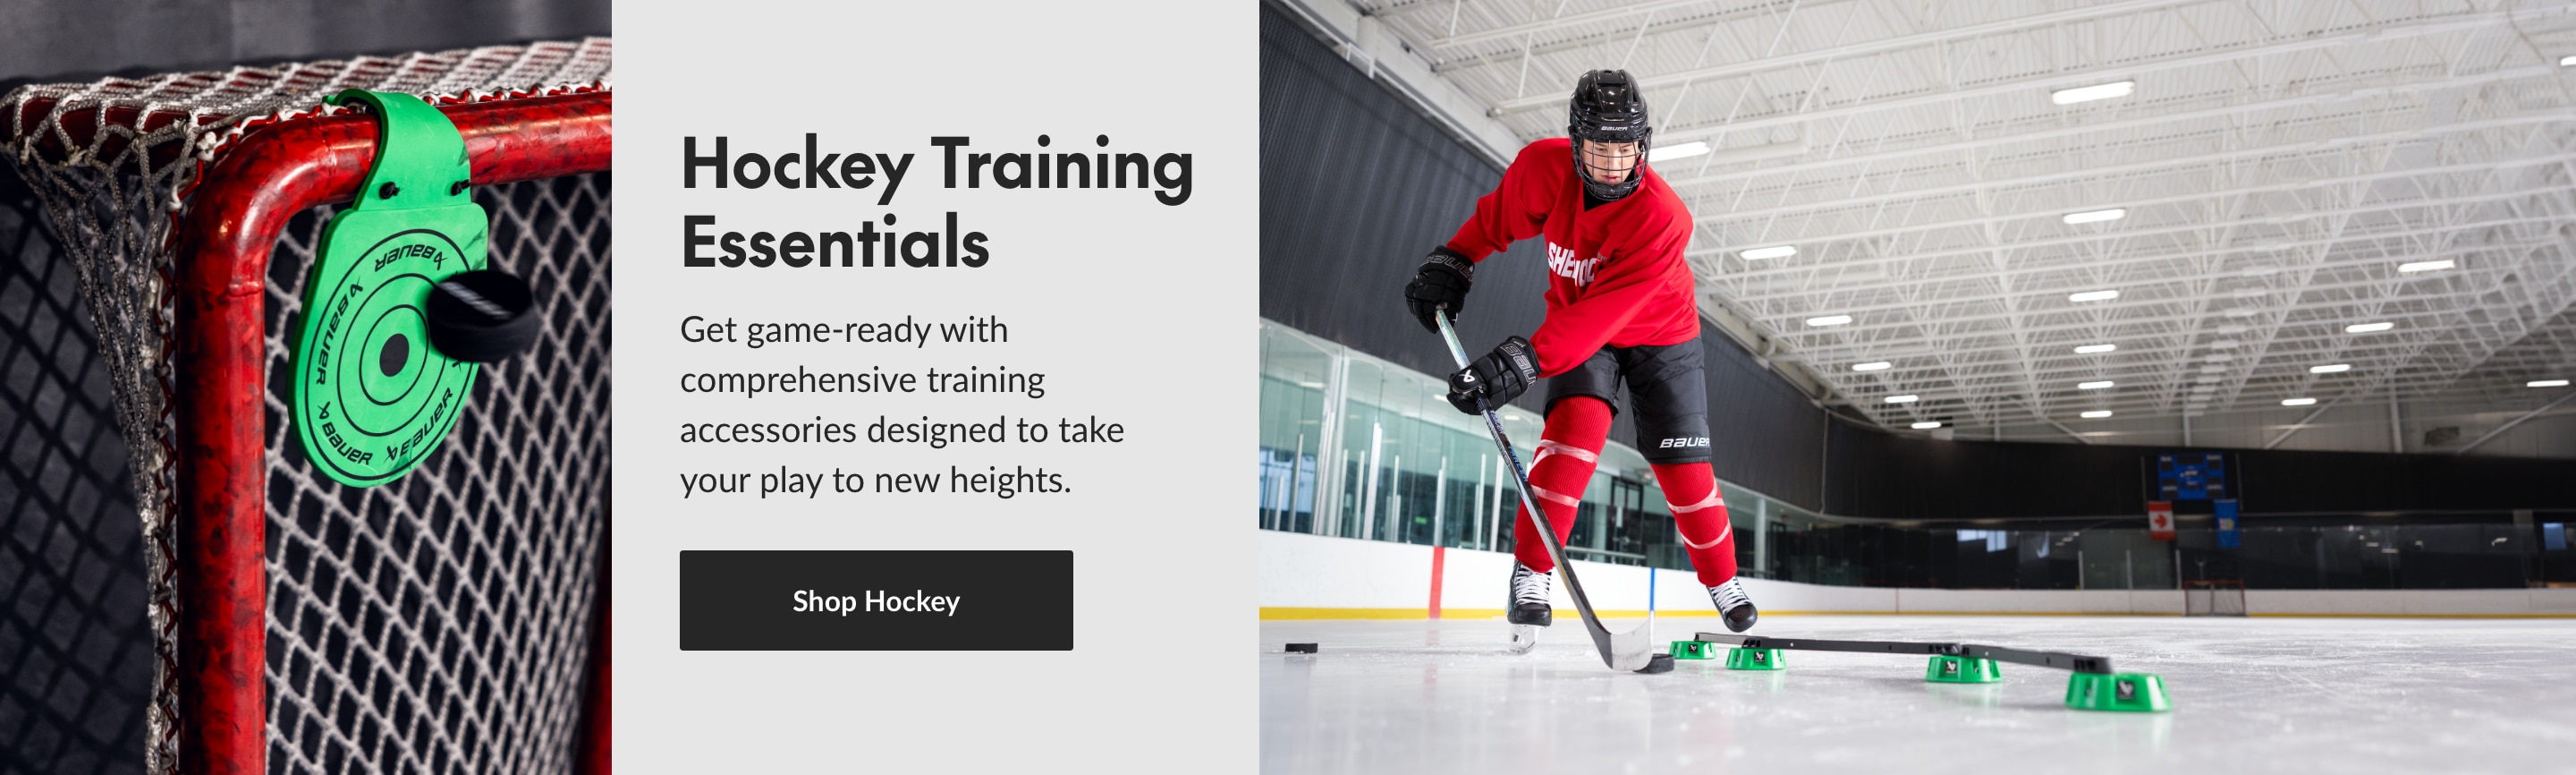 Hockey Training Essentials